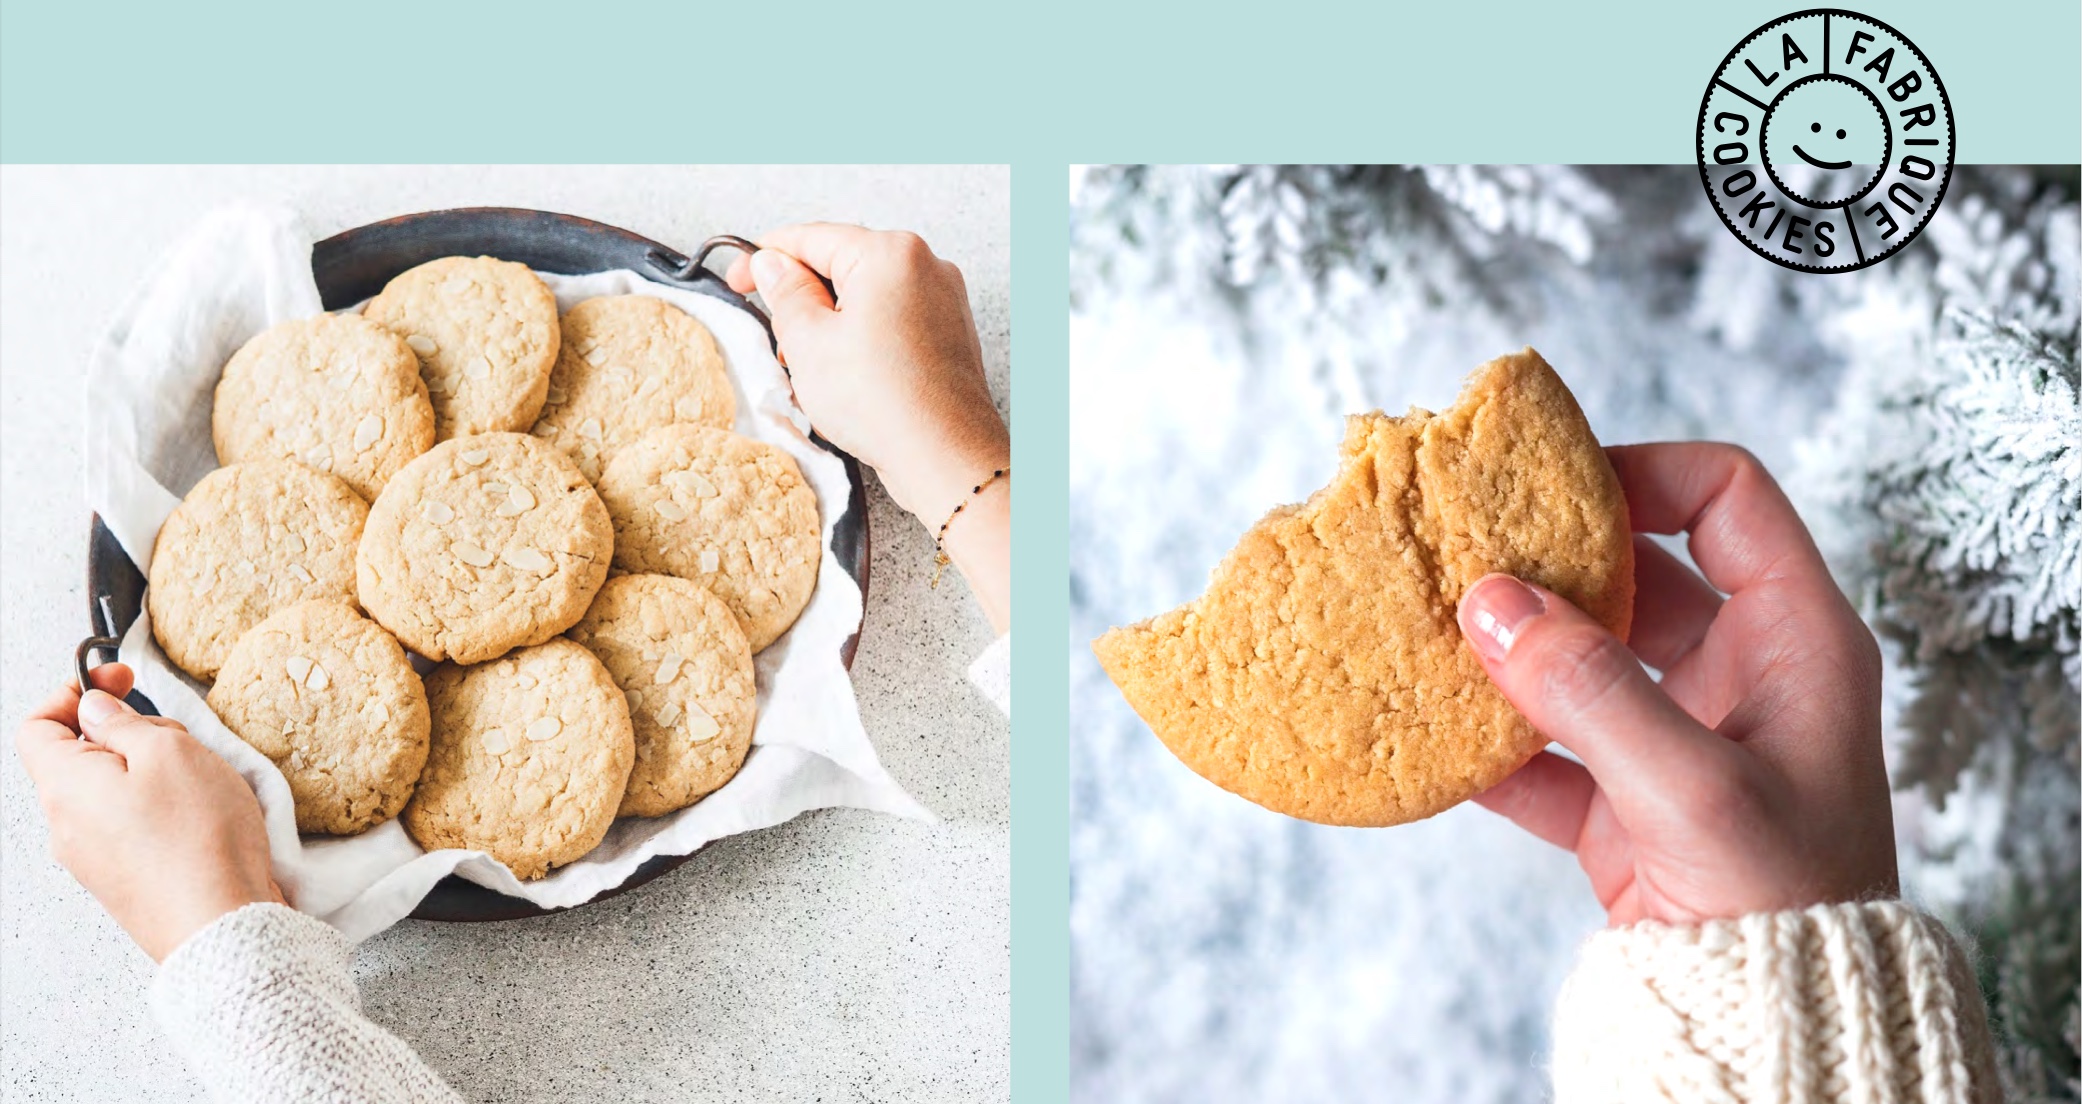 Capture decran 2021 12 01 a 18.08.41 - La Fabrique Cookies dévoile une nouvelle édition limitée : Le Cookie Frangipane !